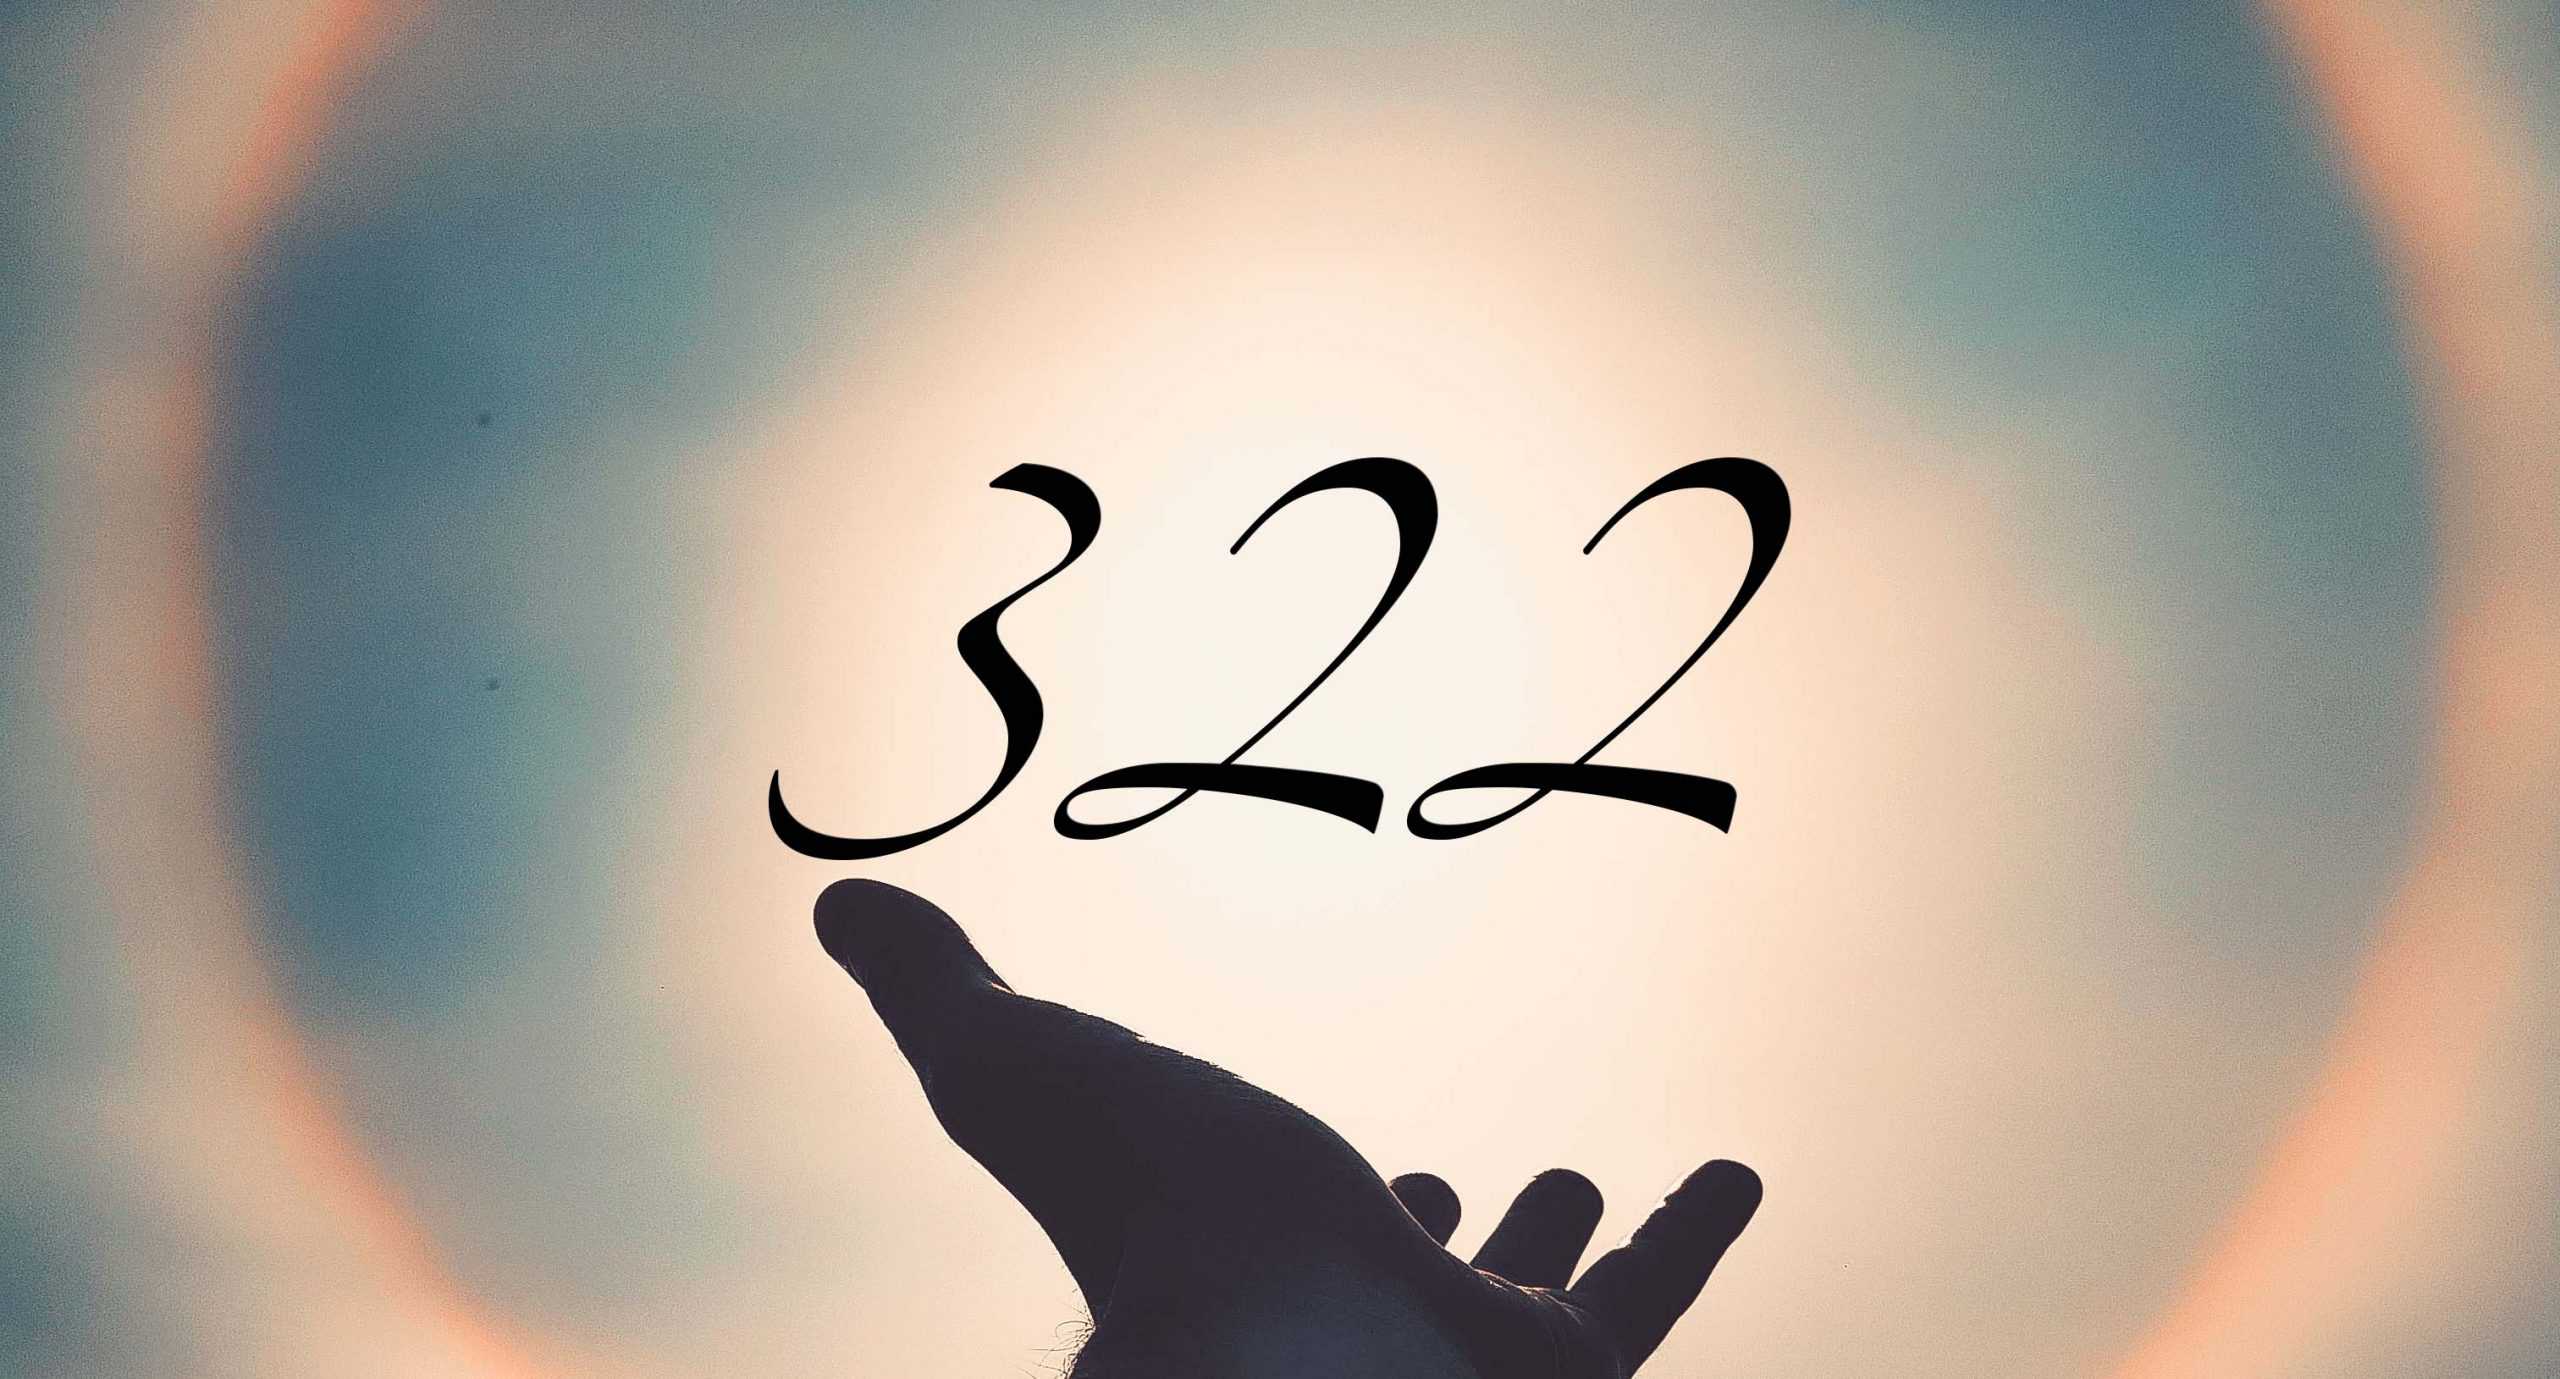 Signification du nombre 322